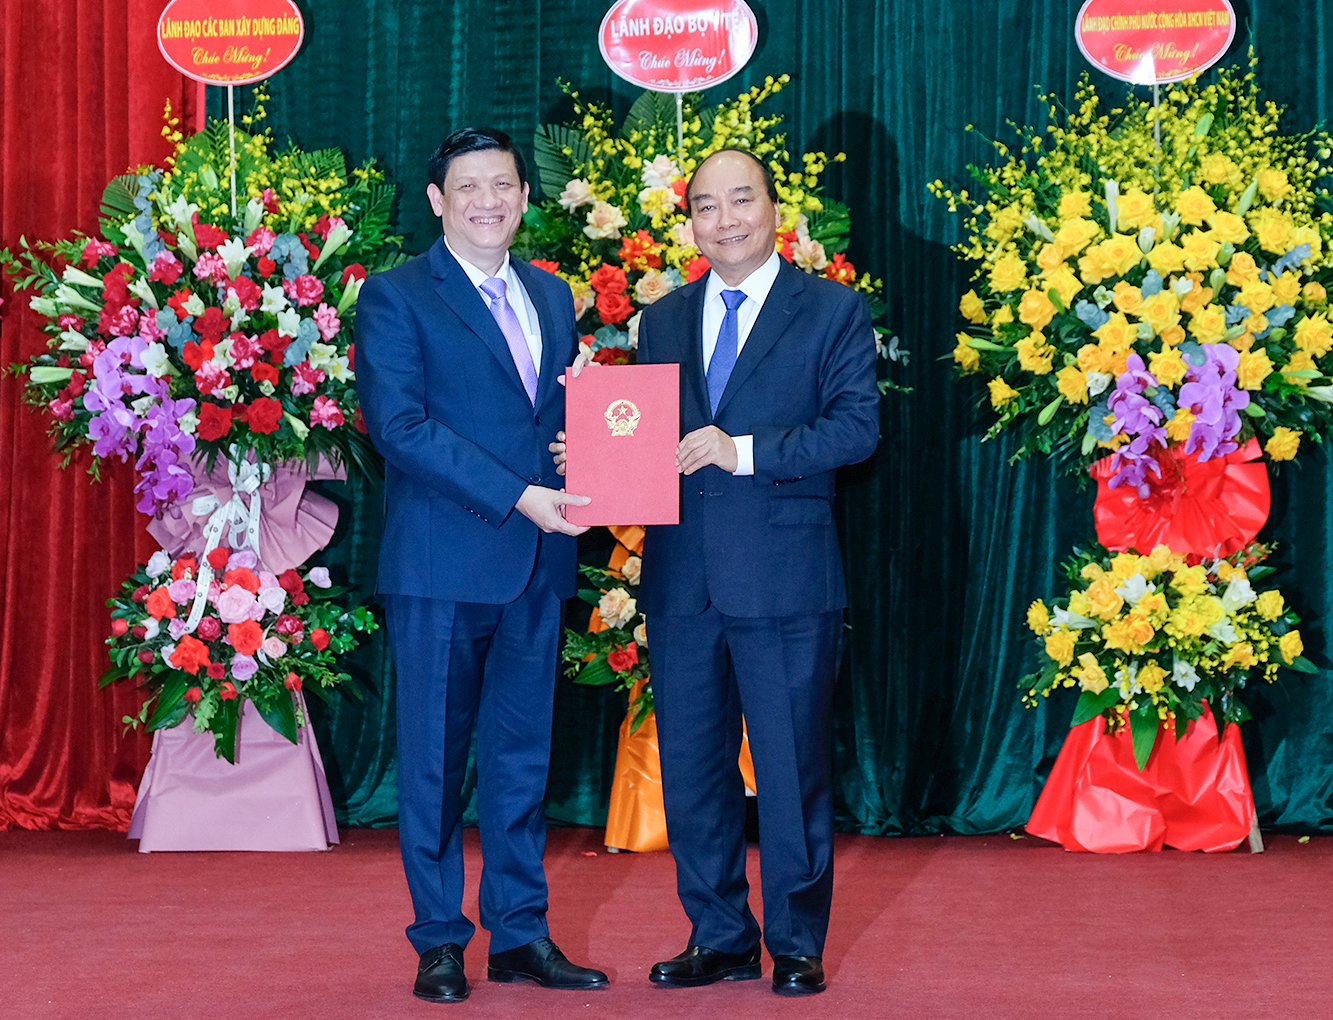   Thủ tướng Nguyễn Xuân Phúc trao quyết định cho tân Bộ trưởng Bộ Y tế Nguyễn Thanh Long.  